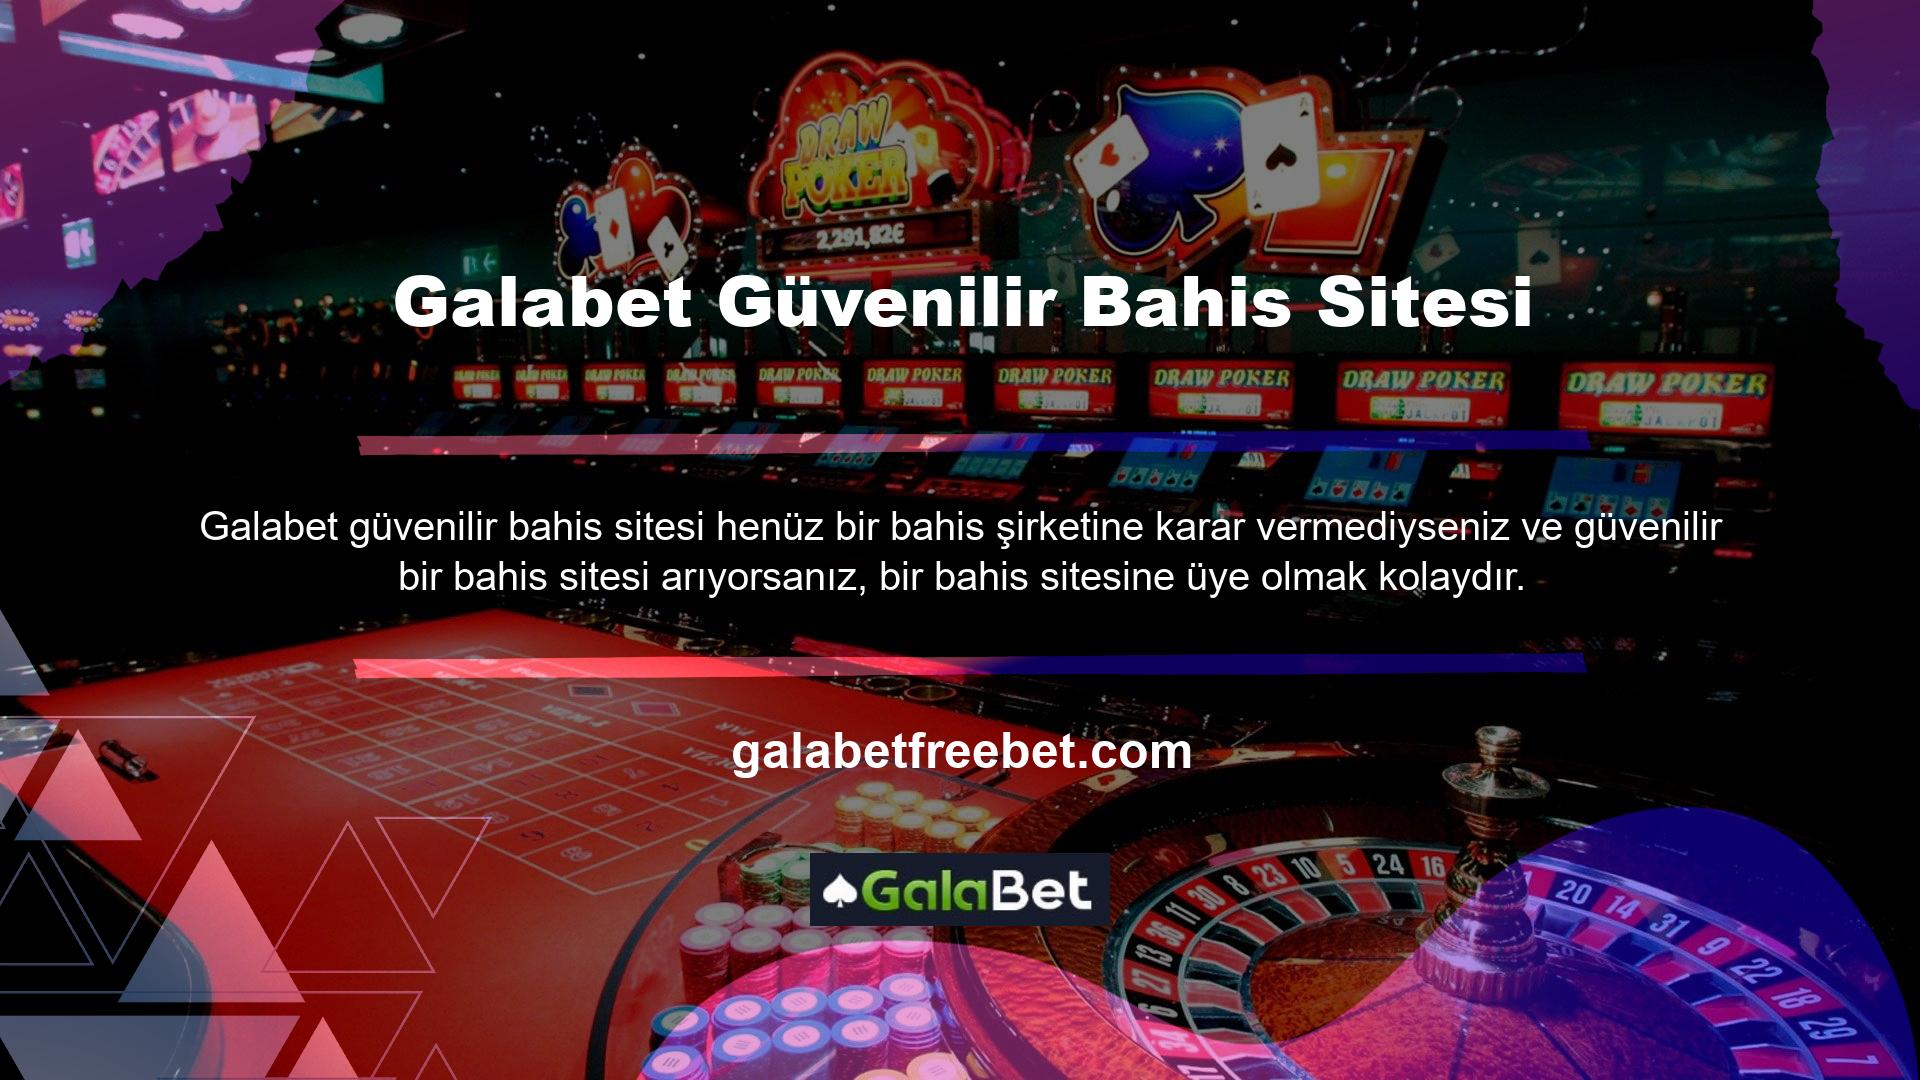 Galabet casino oyun tutkunlarına fırsatlar sunmanın yanı sıra güvenli bir oyun ortamı da yaratıyor